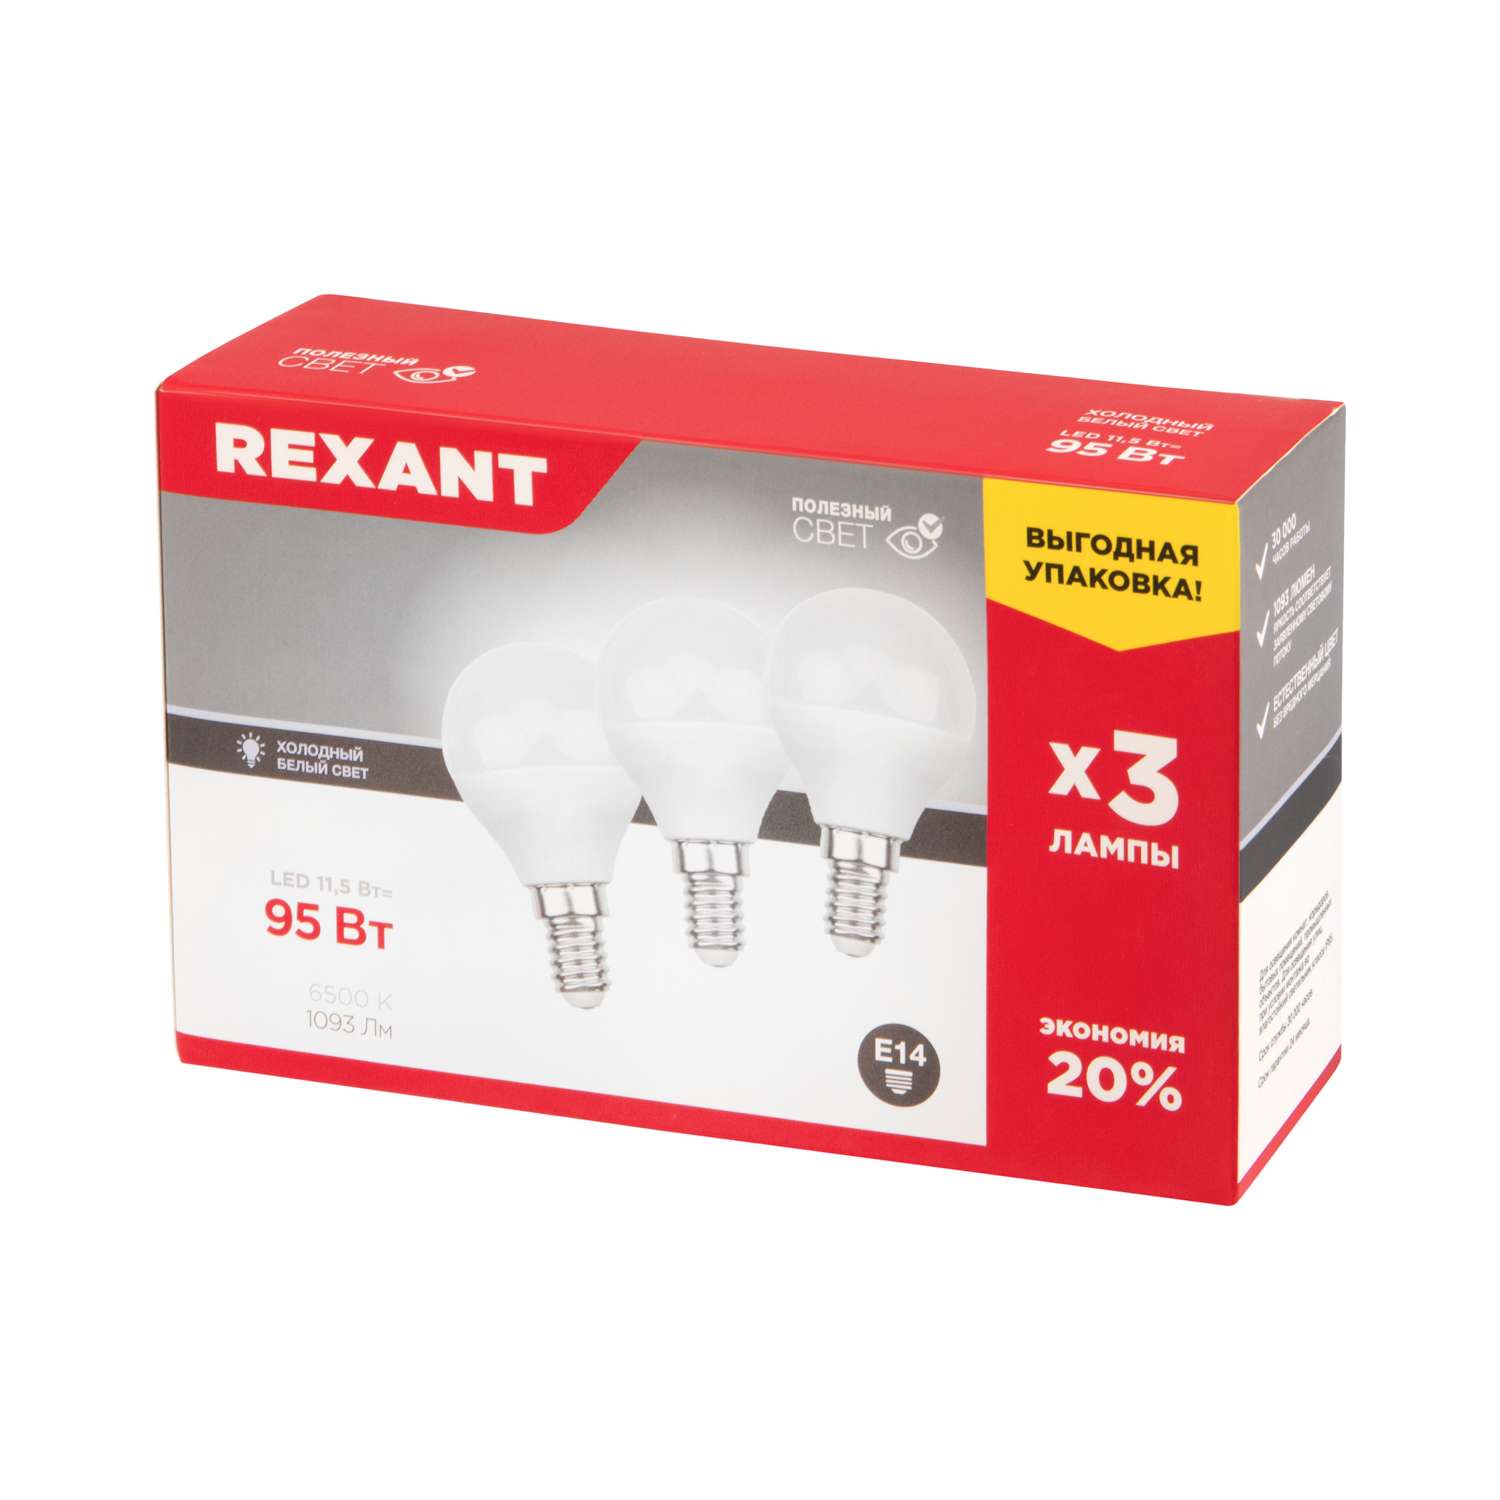 Лампа REXANT светодиодная Шарик GL 11.5Вт E14 1093Лм 6500K холодный свет 3 штуки - фото 2